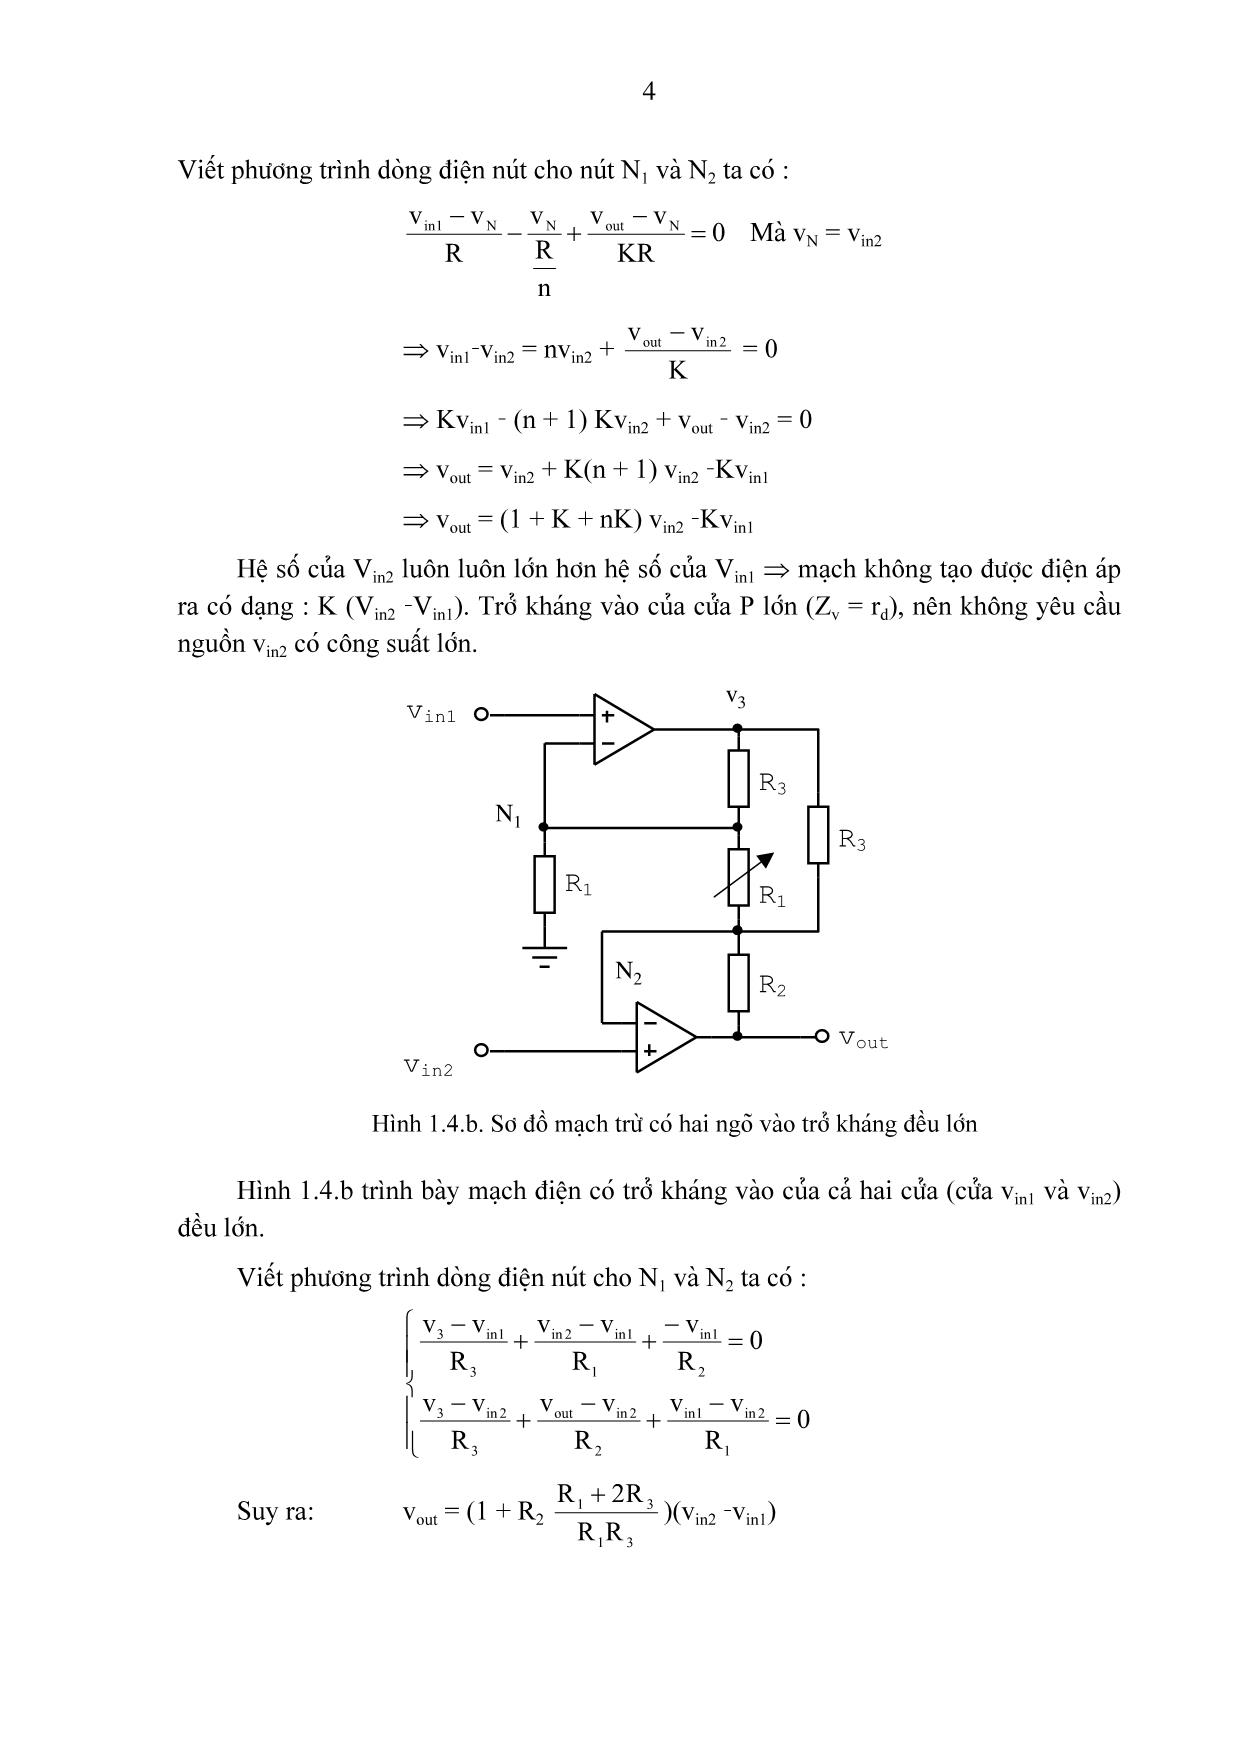 Bài giảng chương 1: Các mạch tính toán, điều khiển và tạo hàm dùng khuếch đại thuật toán trang 4